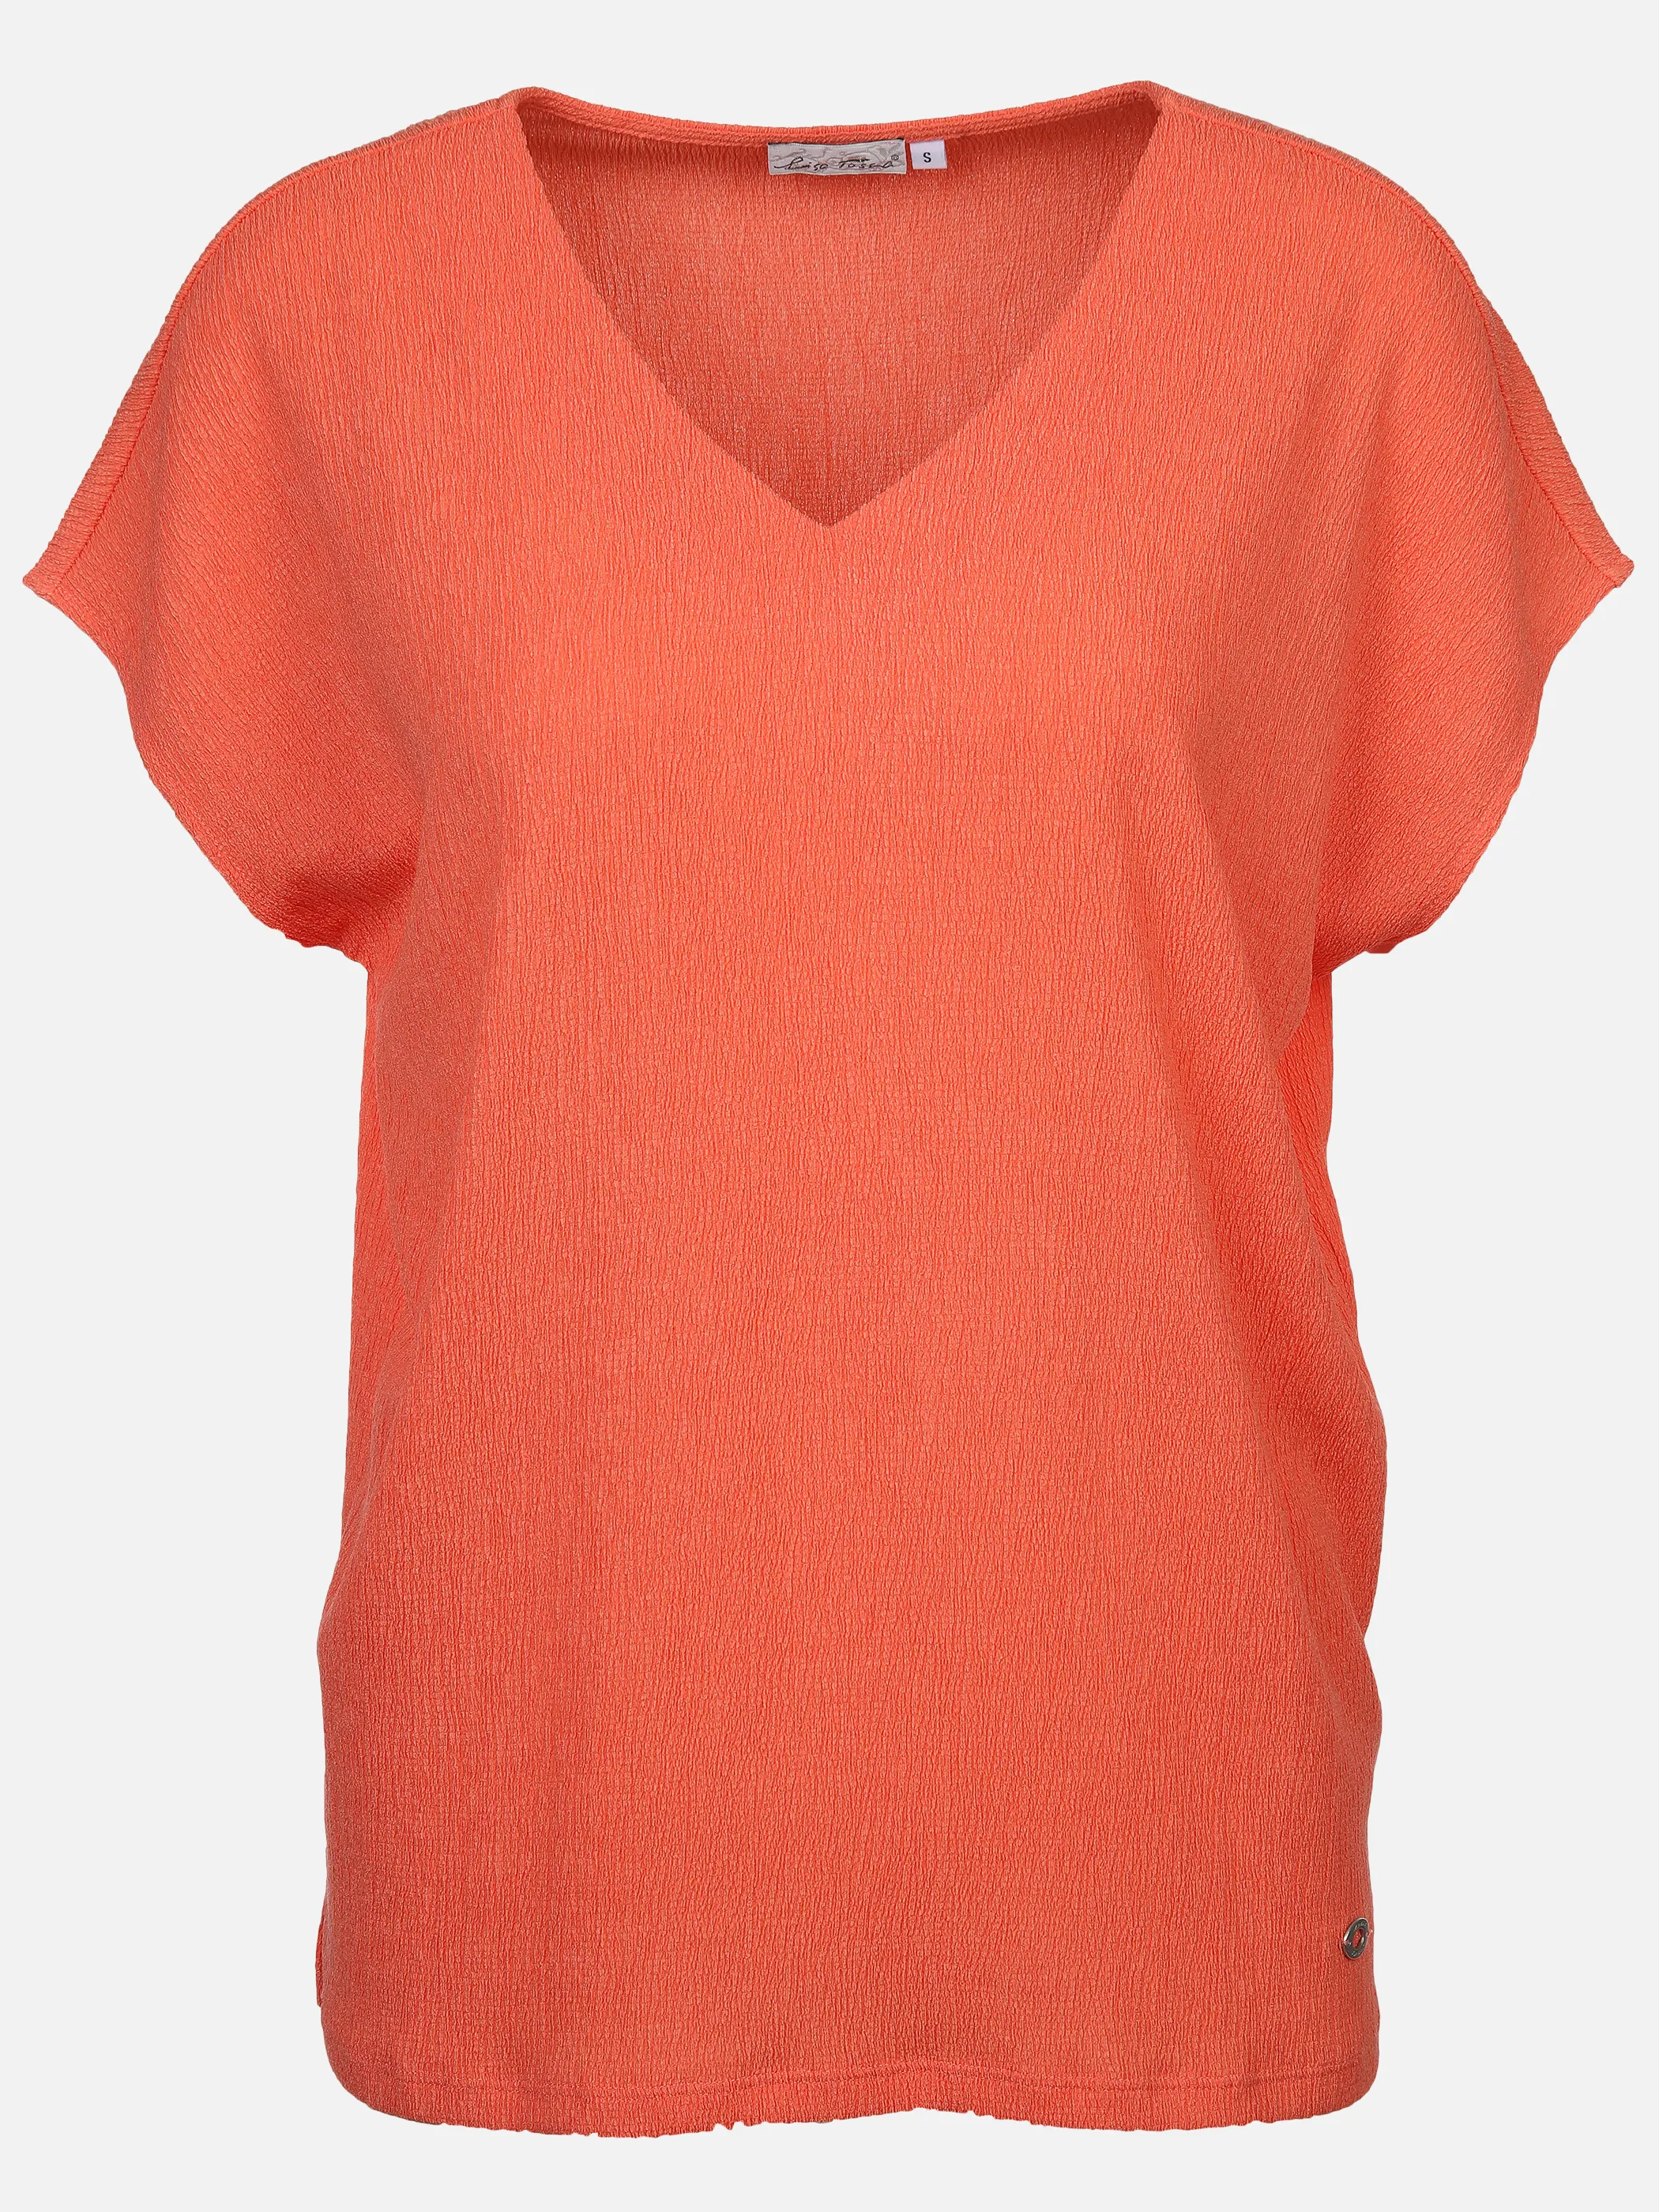 Lisa Tossa Da-Shirt in Crashoptik Orange 891199 PAPAYA 1